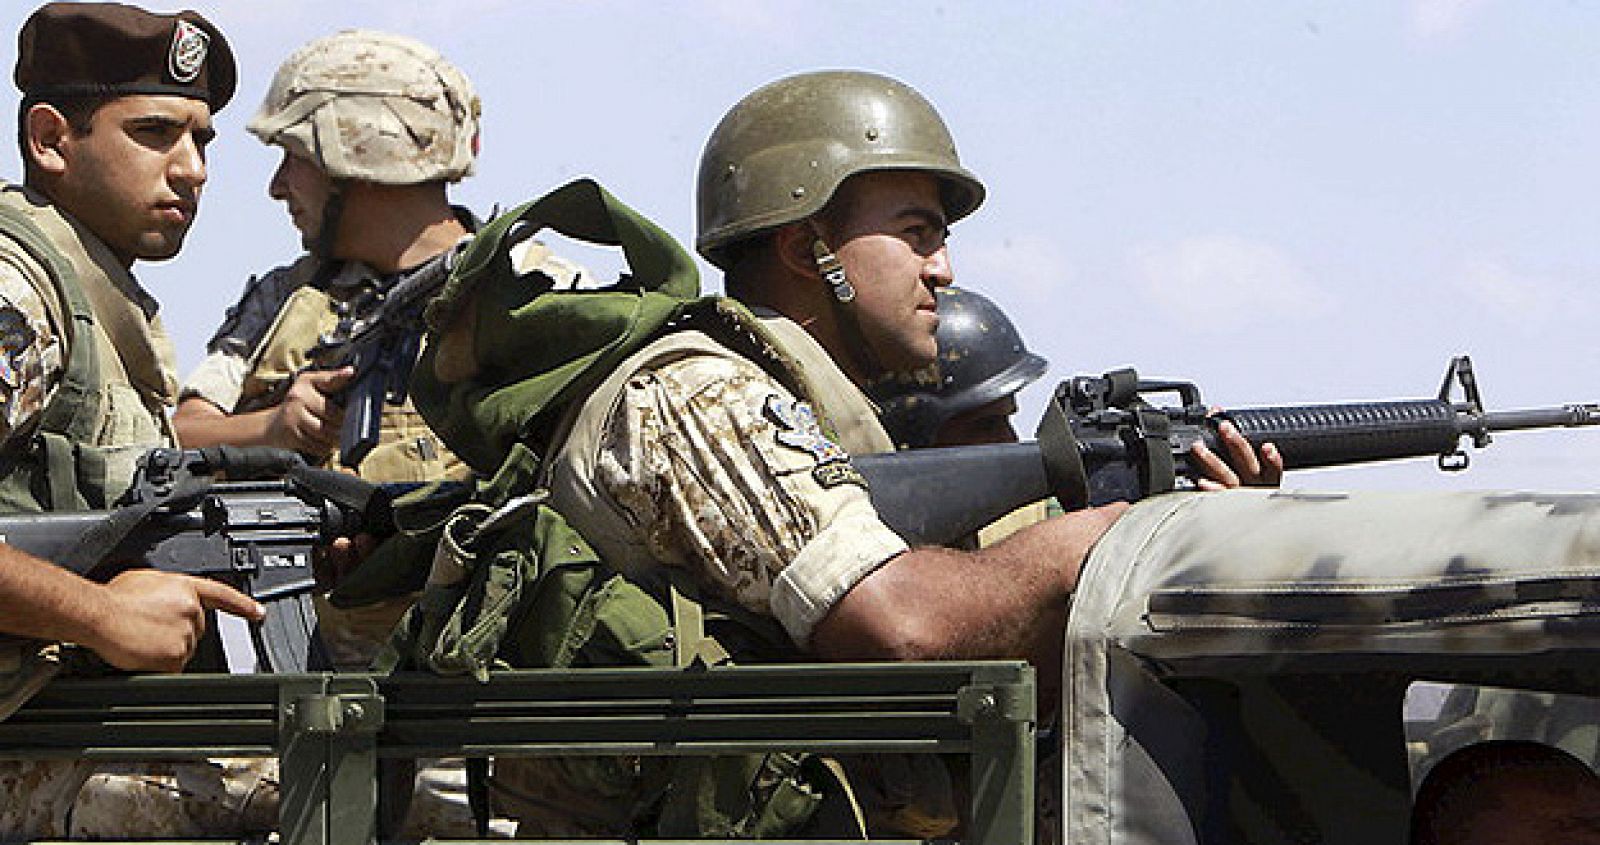 Tropas de las Fuerzas Armadas libanesas combaten en la frontera con Siria